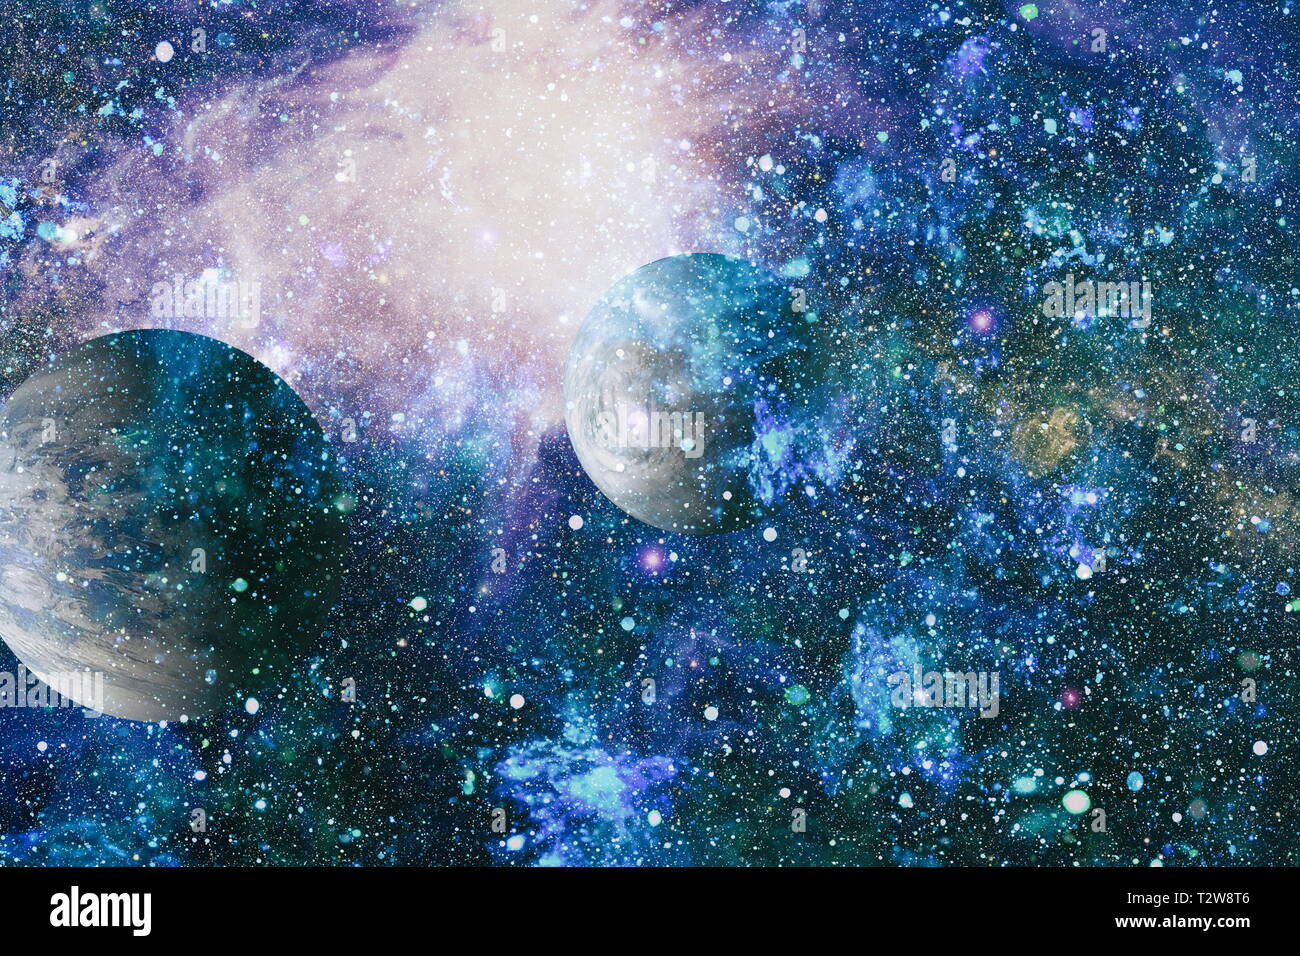 L'explosion supernova. Bright Star Nebula. Galaxie éloignée. Image abstraite. Éléments de cette image fournie par la NASA. Banque D'Images